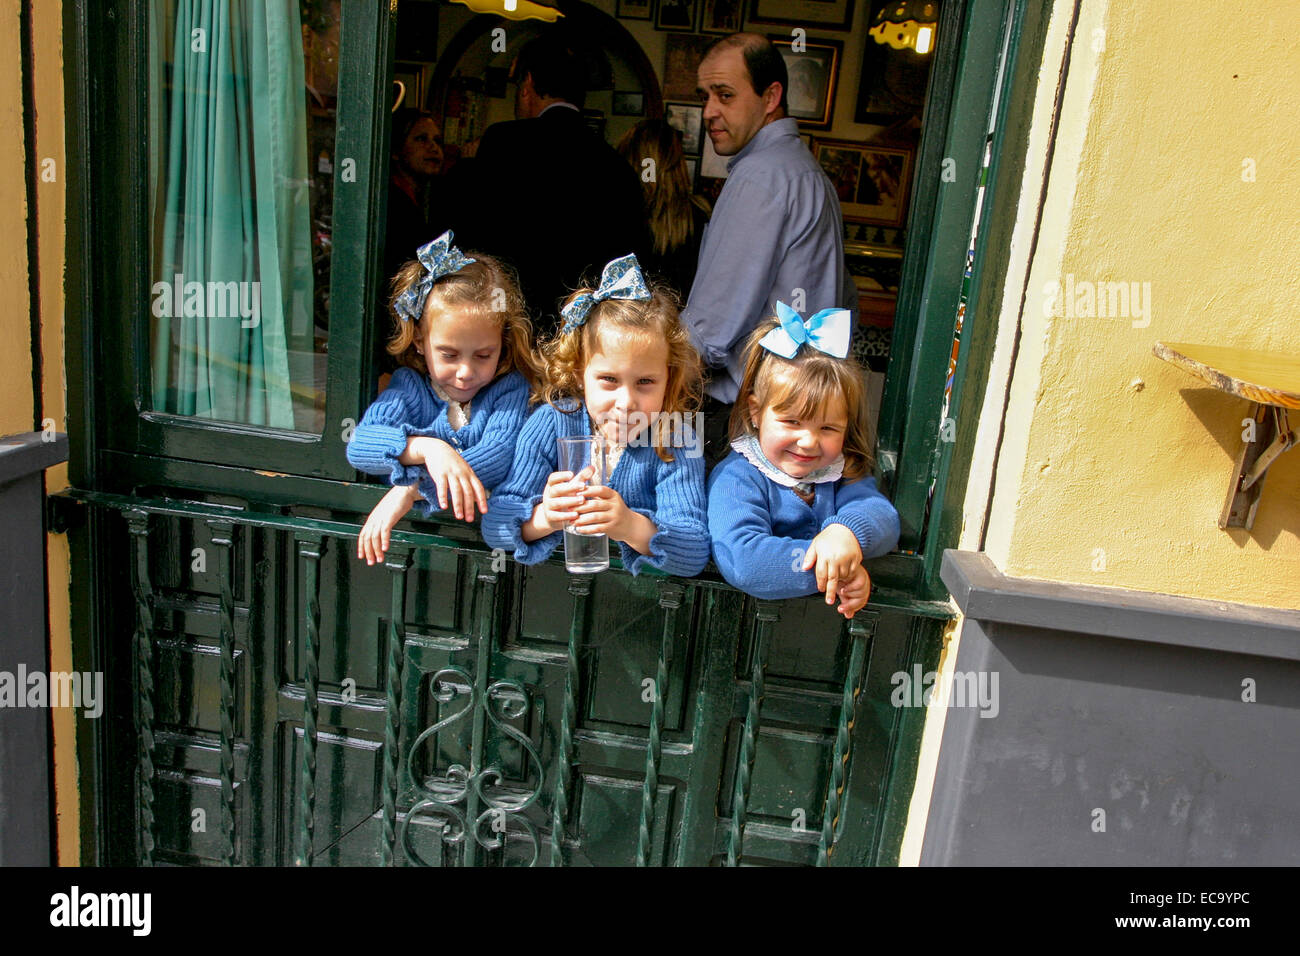 Triplés filles avec des arcs dans les cheveux, même tenue Séville. Espagne générations vieillissantes Banque D'Images